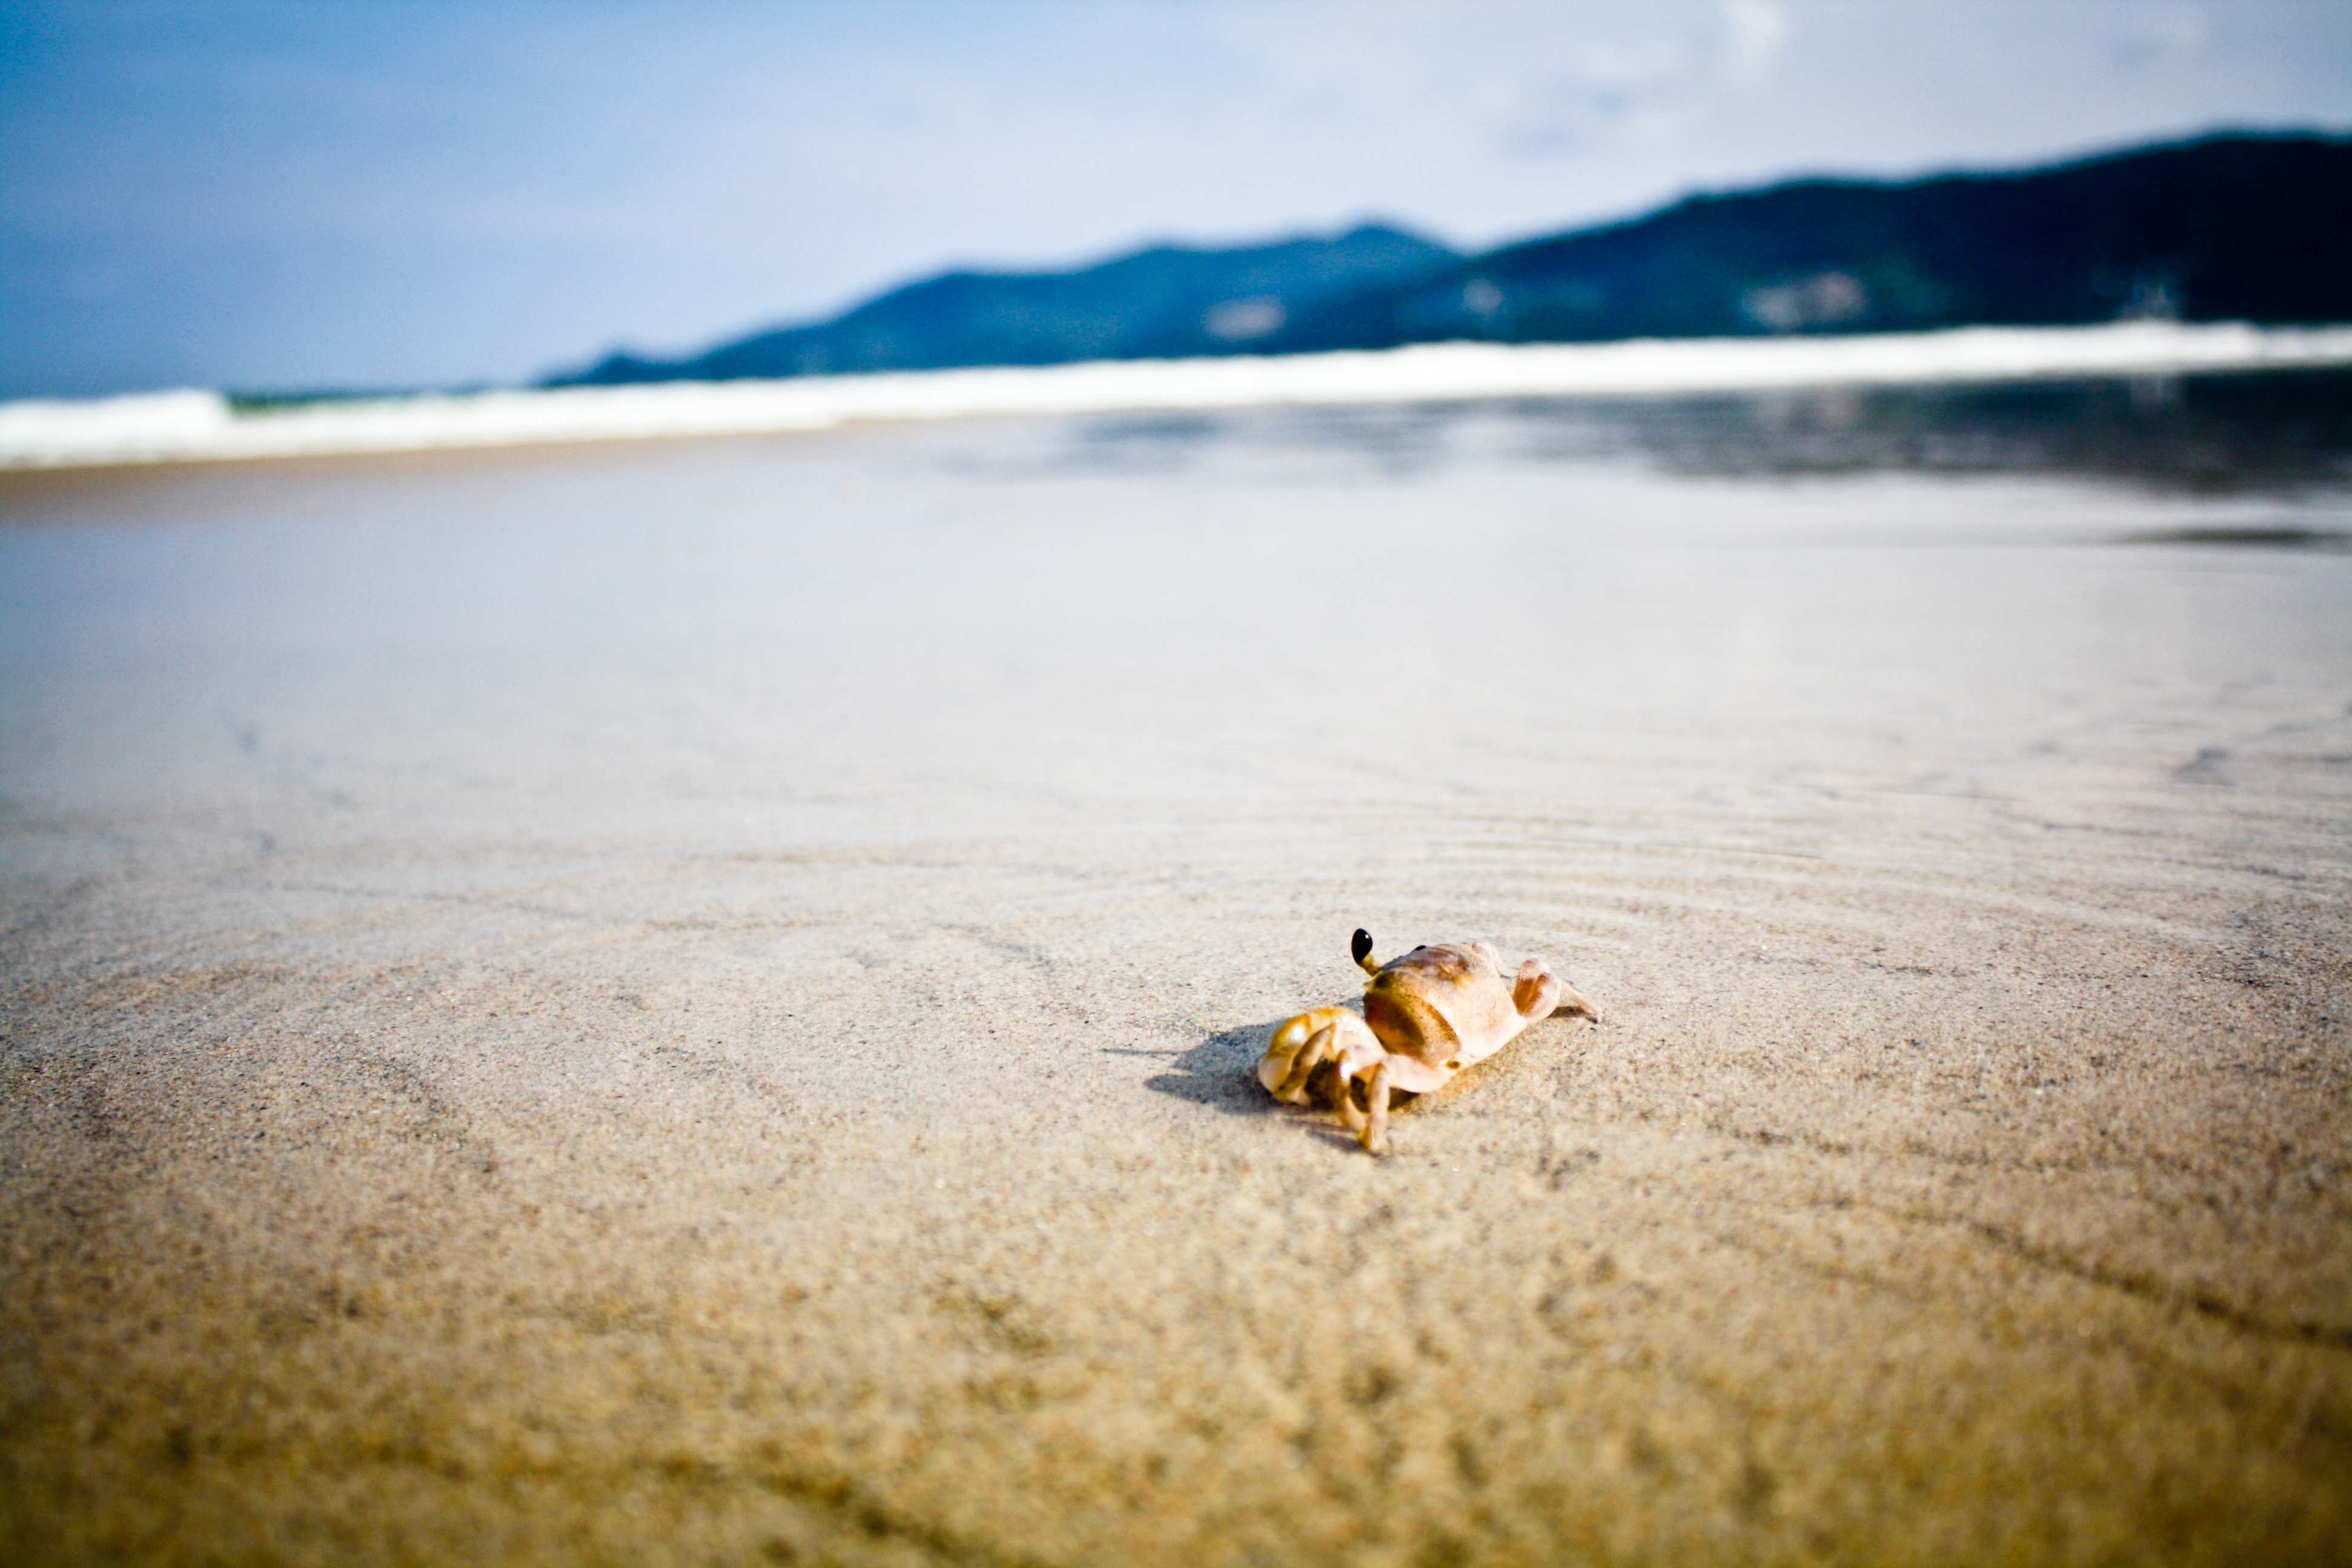 A crab walks along the beach